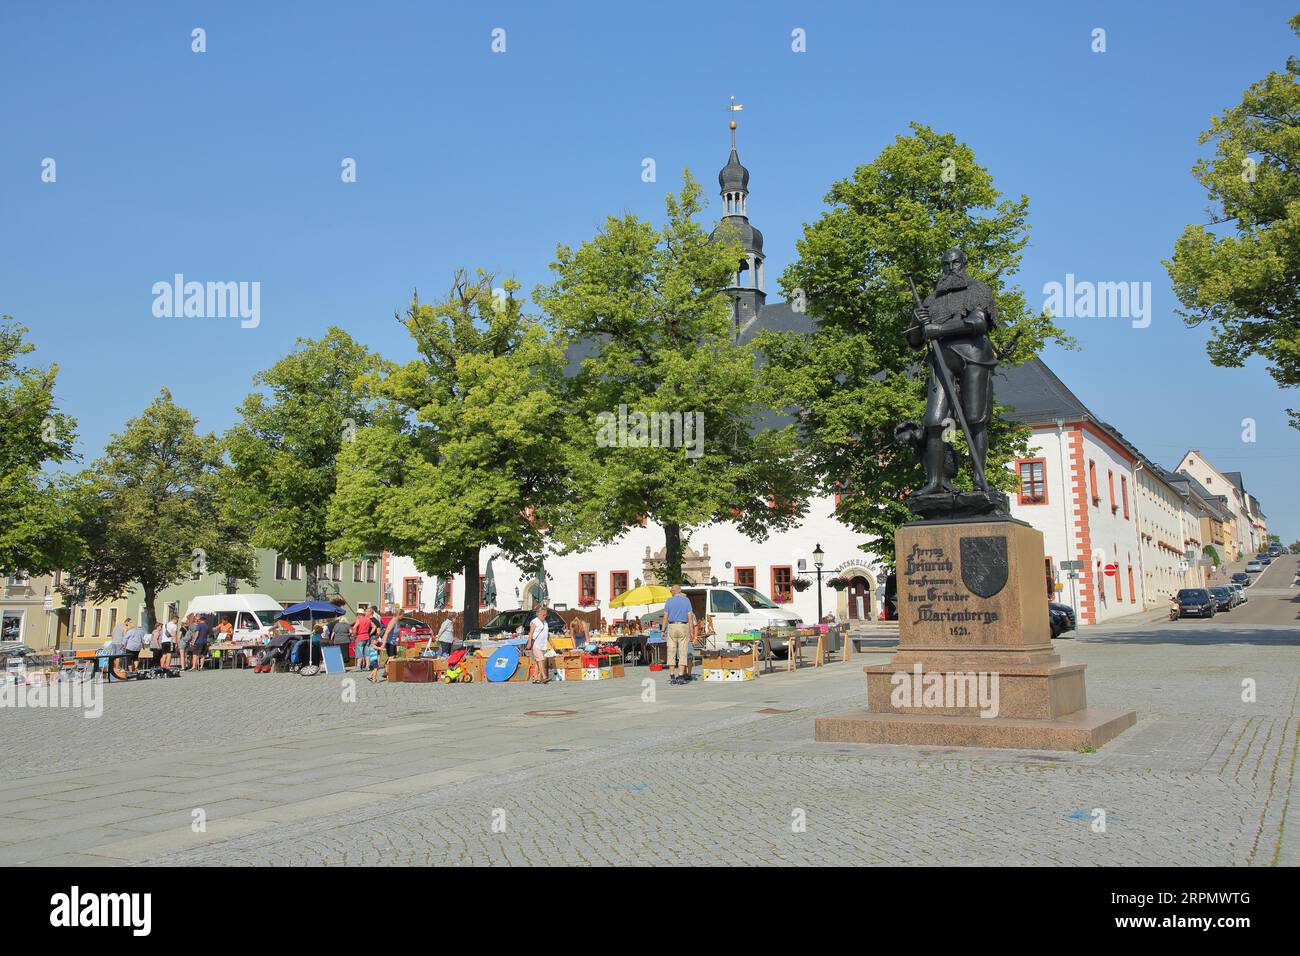 Marktplatz mit Flohmarkt und Denkmal für Herzog Heinrich den Frommen, Marienberg, Erzgebirge, Sachsen, Deutschland Stockfoto